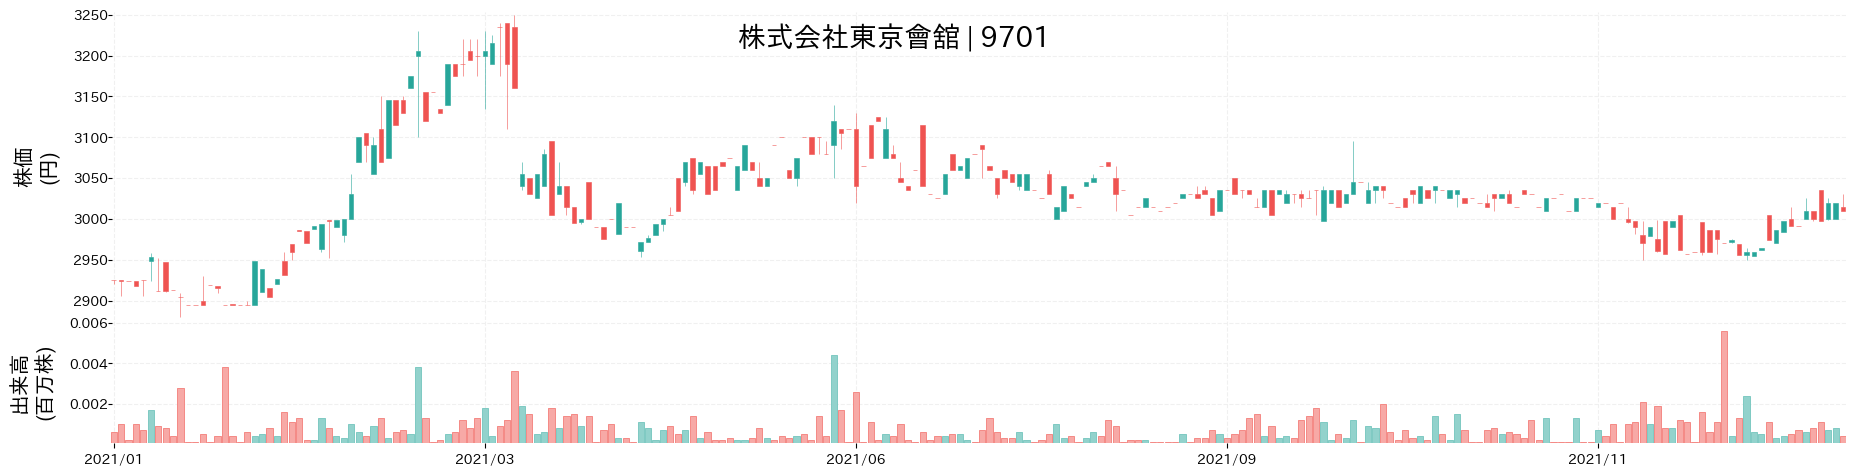 東京會舘の株価推移(2021)